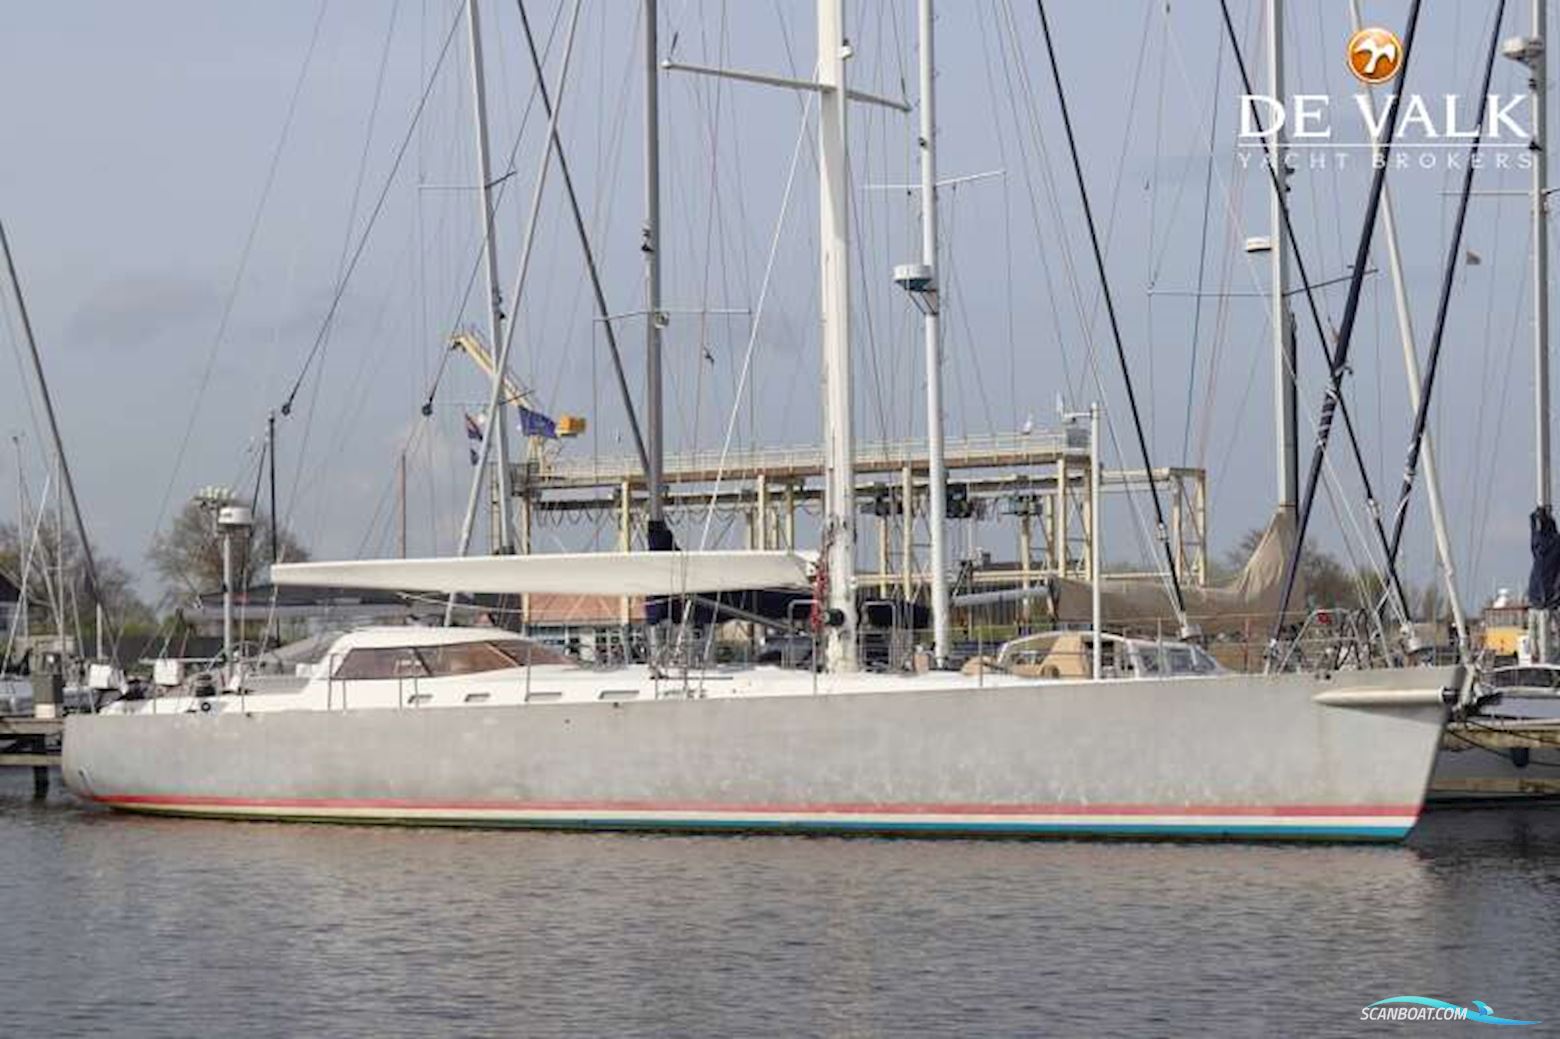 van de Stadt Stadtship 70 Sejlbåd 2008, med Perkins Sabre motor, Holland